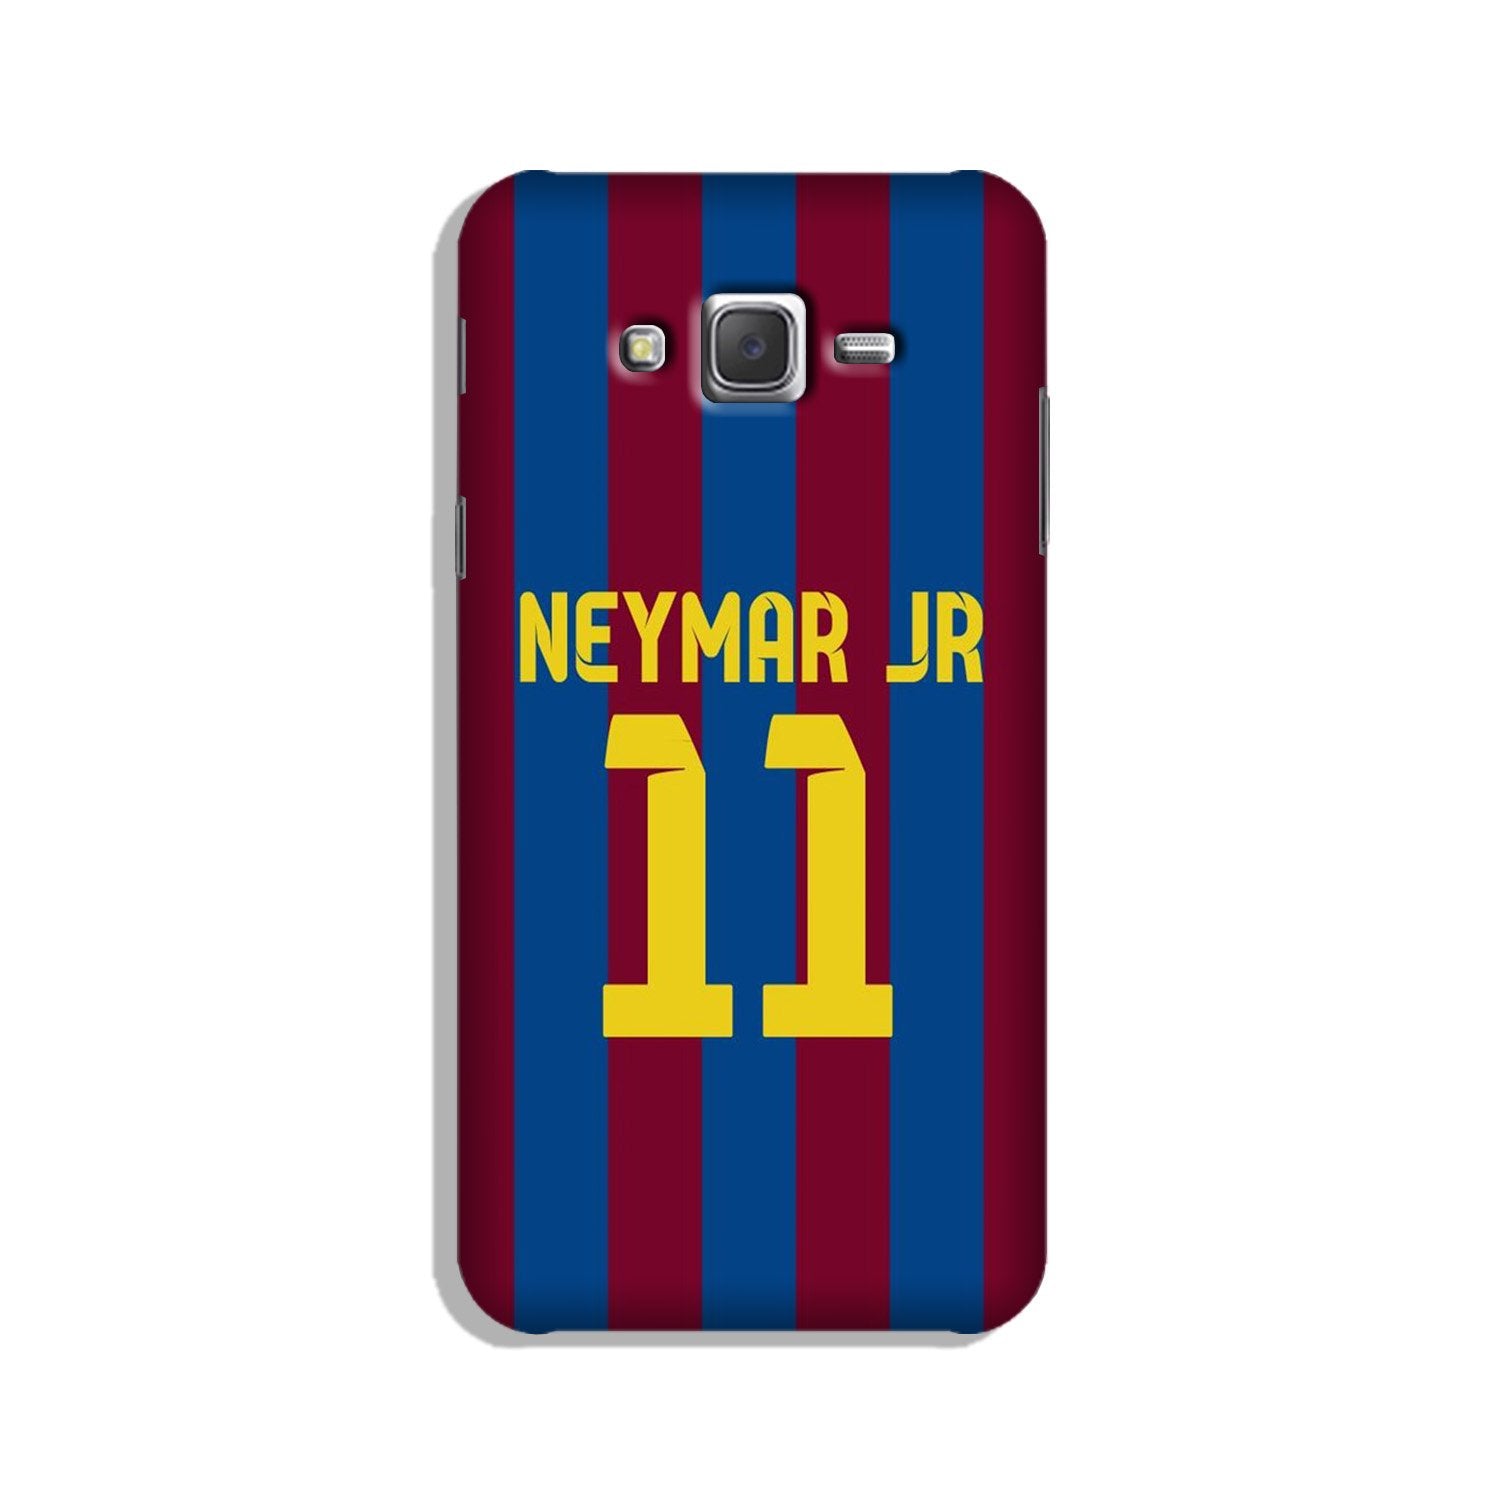 Neymar Jr Case for Galaxy J3 (2015)(Design - 162)